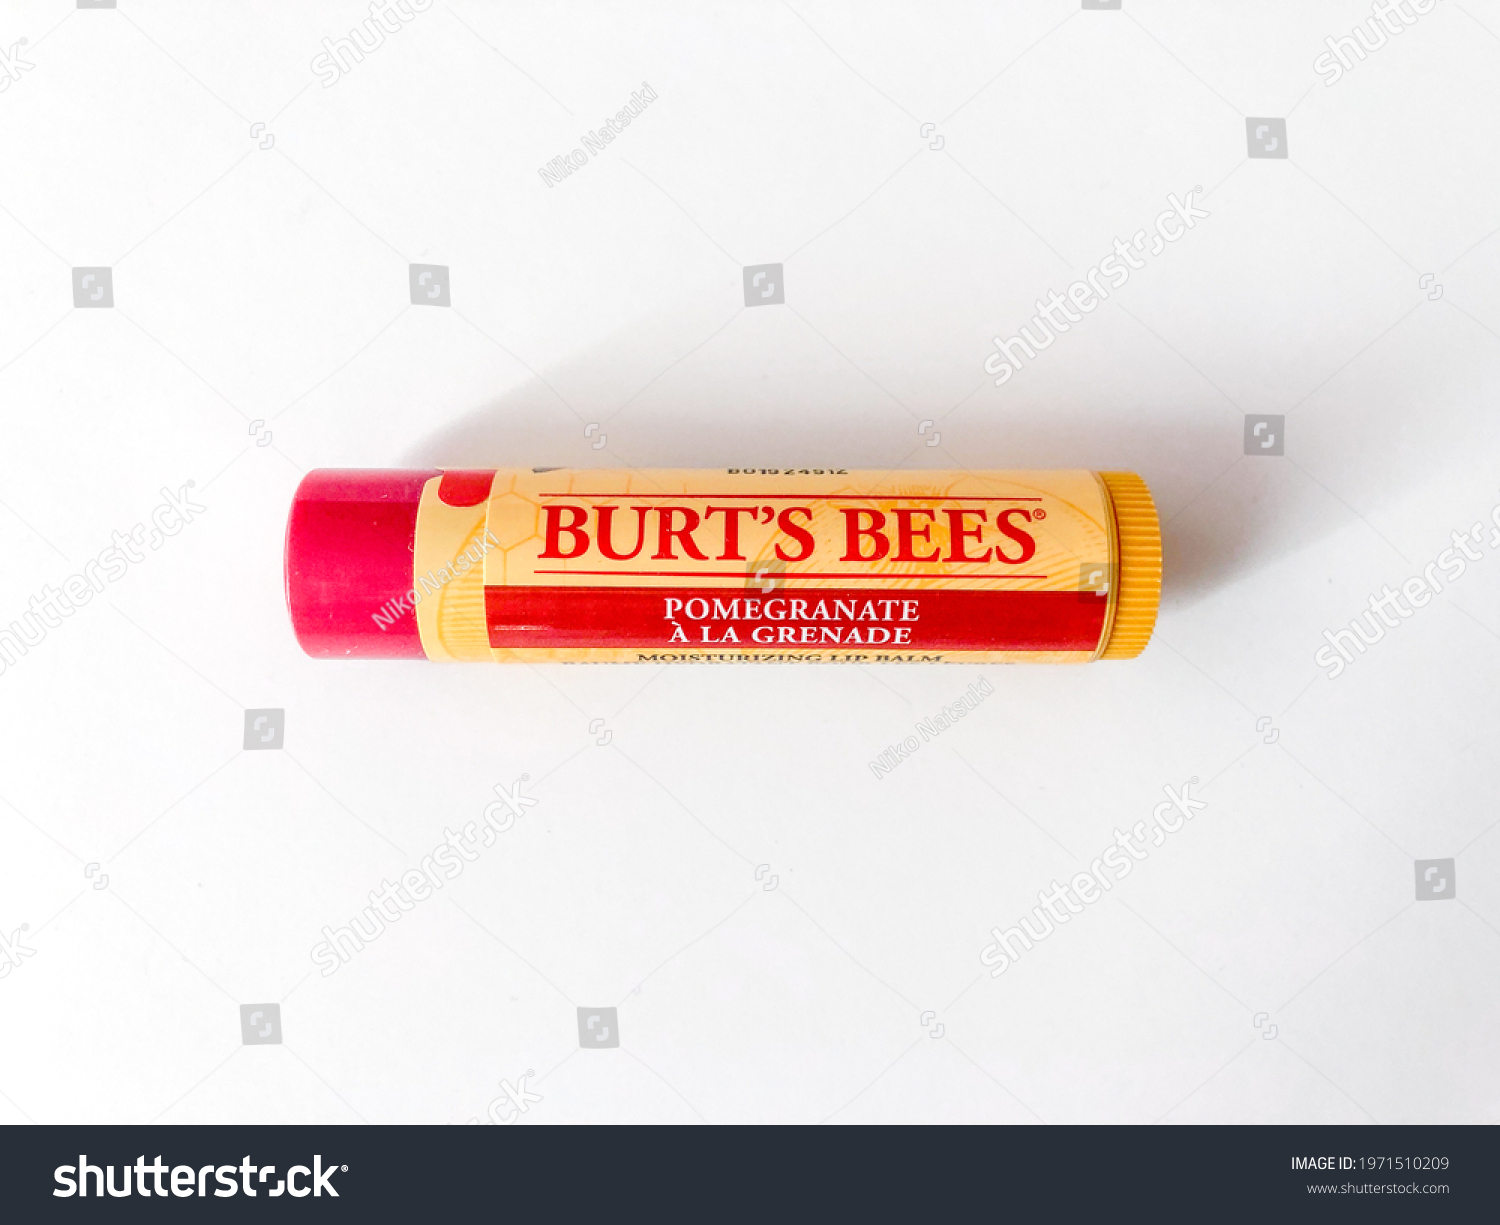 51 Burts Bees Images, Stock Photos & Vectors | Shutterstock